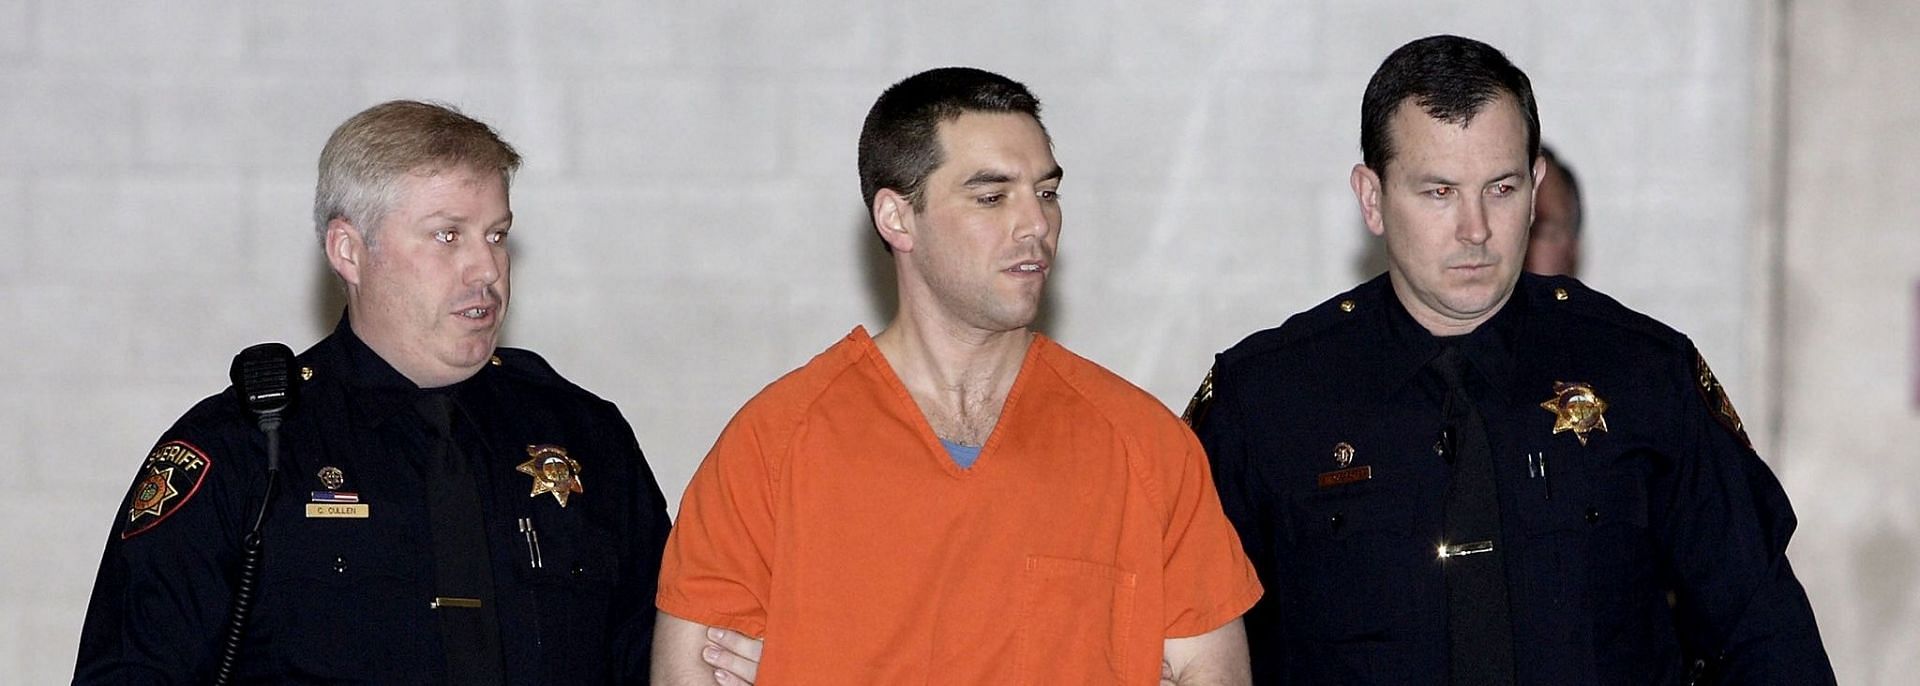 Scott Peterson fue condenado por el asesinato de su esposa Laci Peterson y su hijo por nacer (Imagen a través de Getty Images / Justin Sullivan)